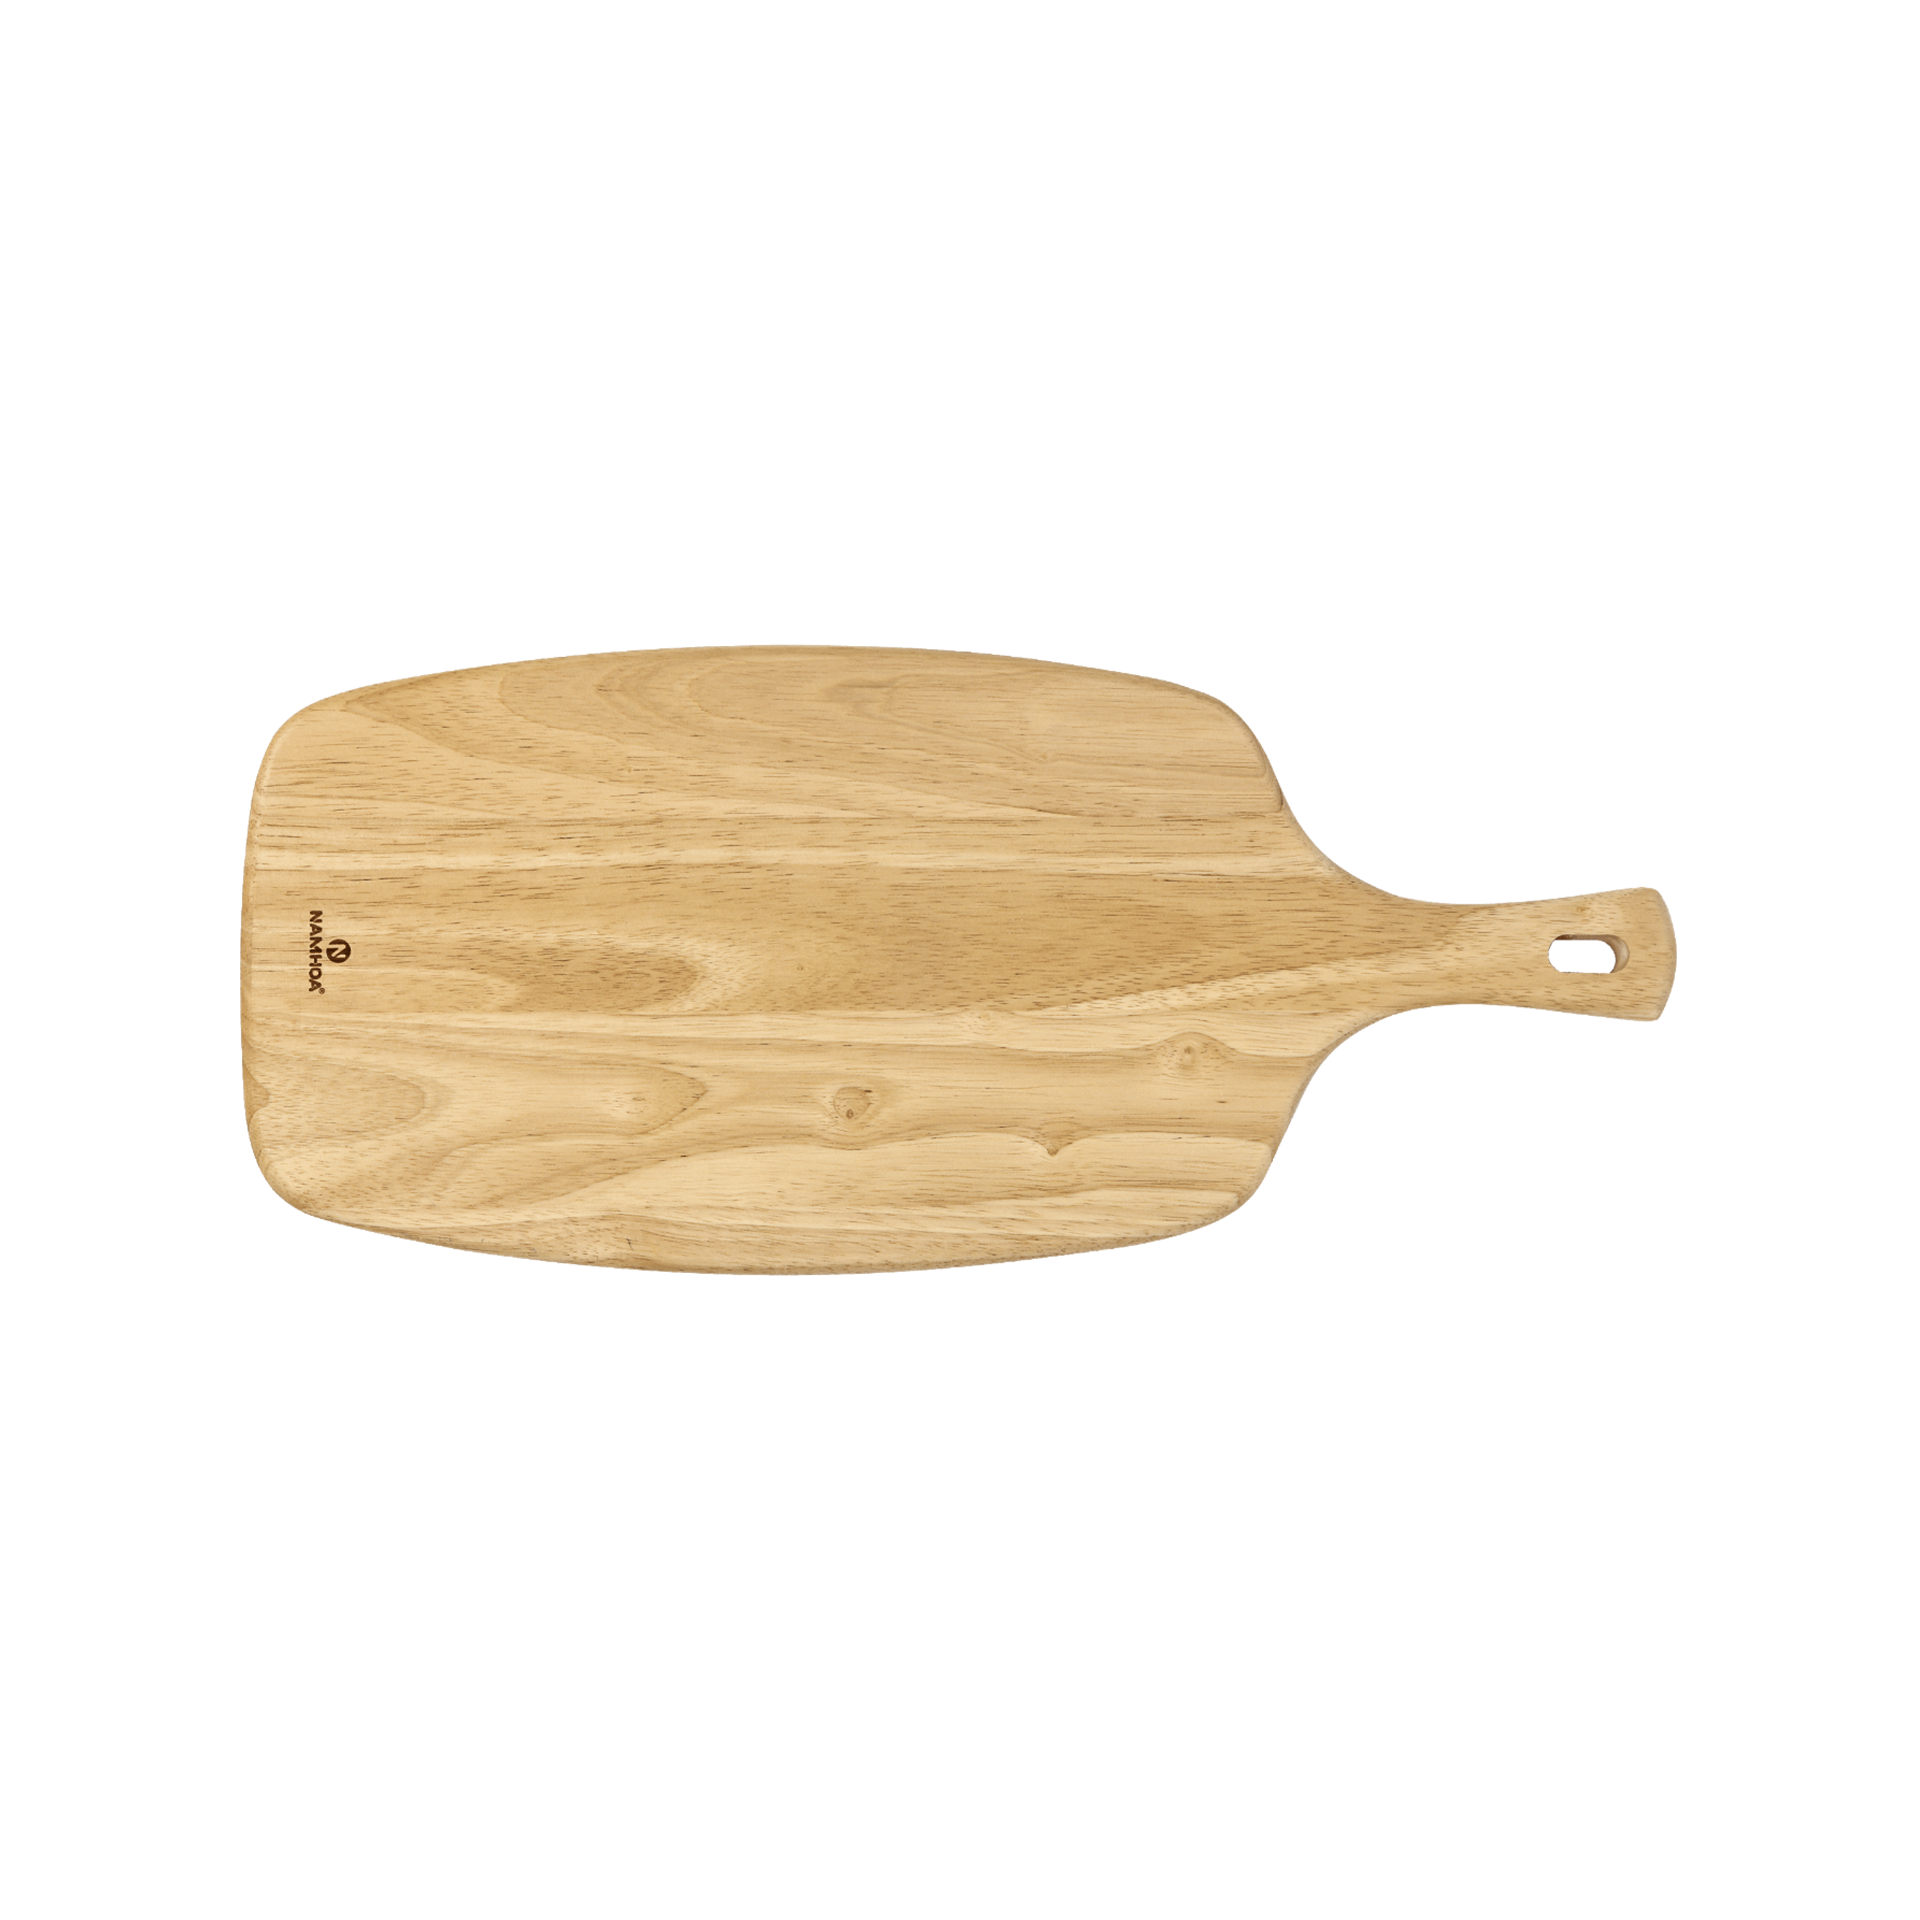 Small Paddle shape cutting board